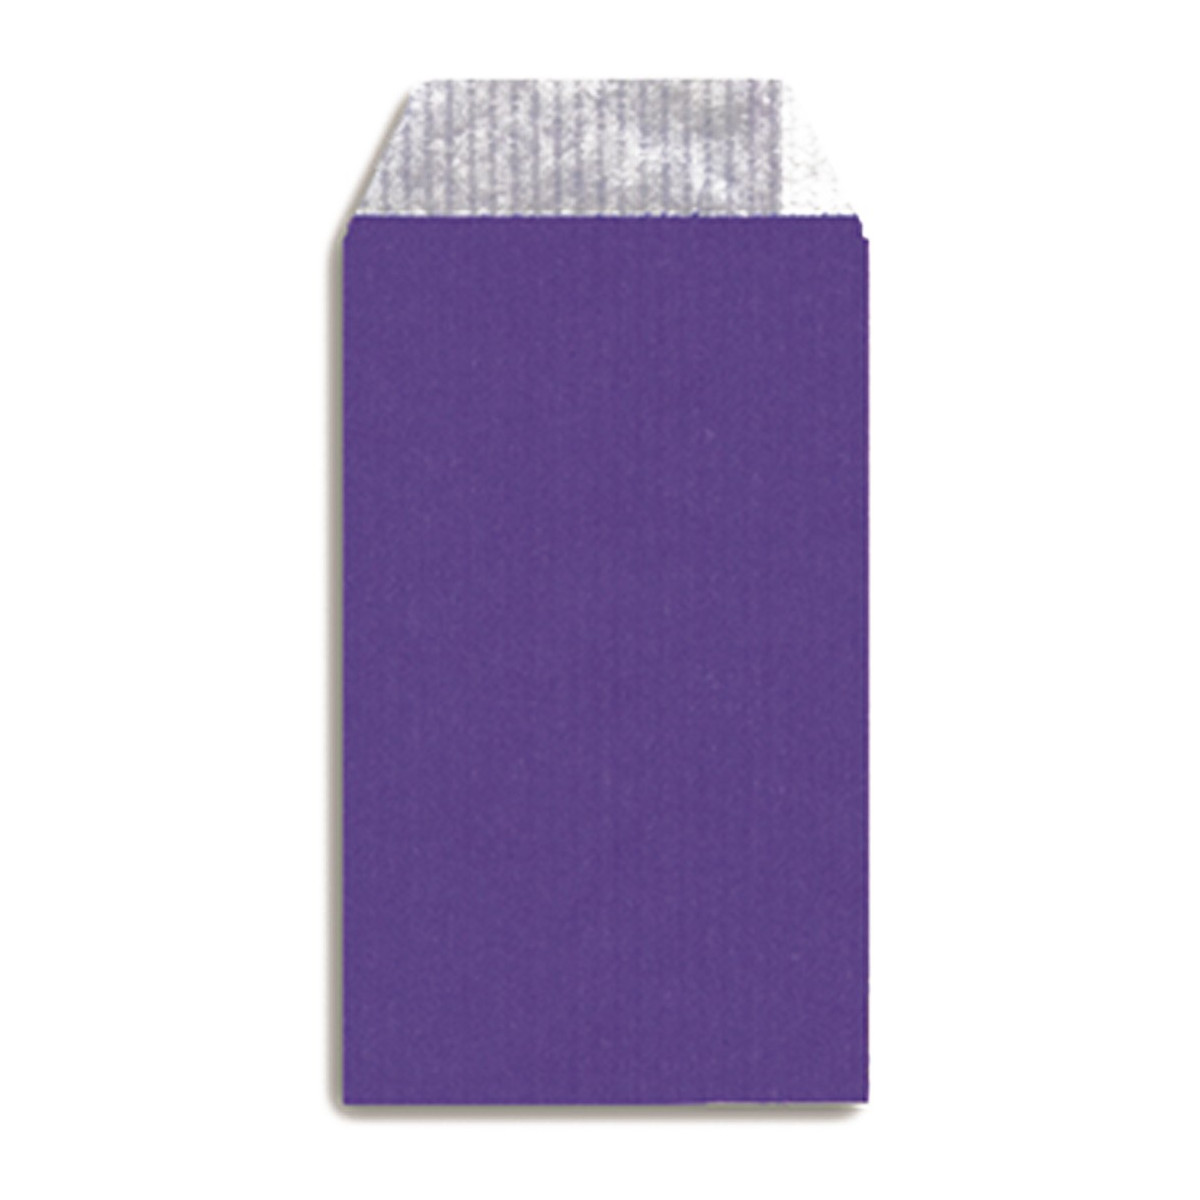 Envelope violet kraft